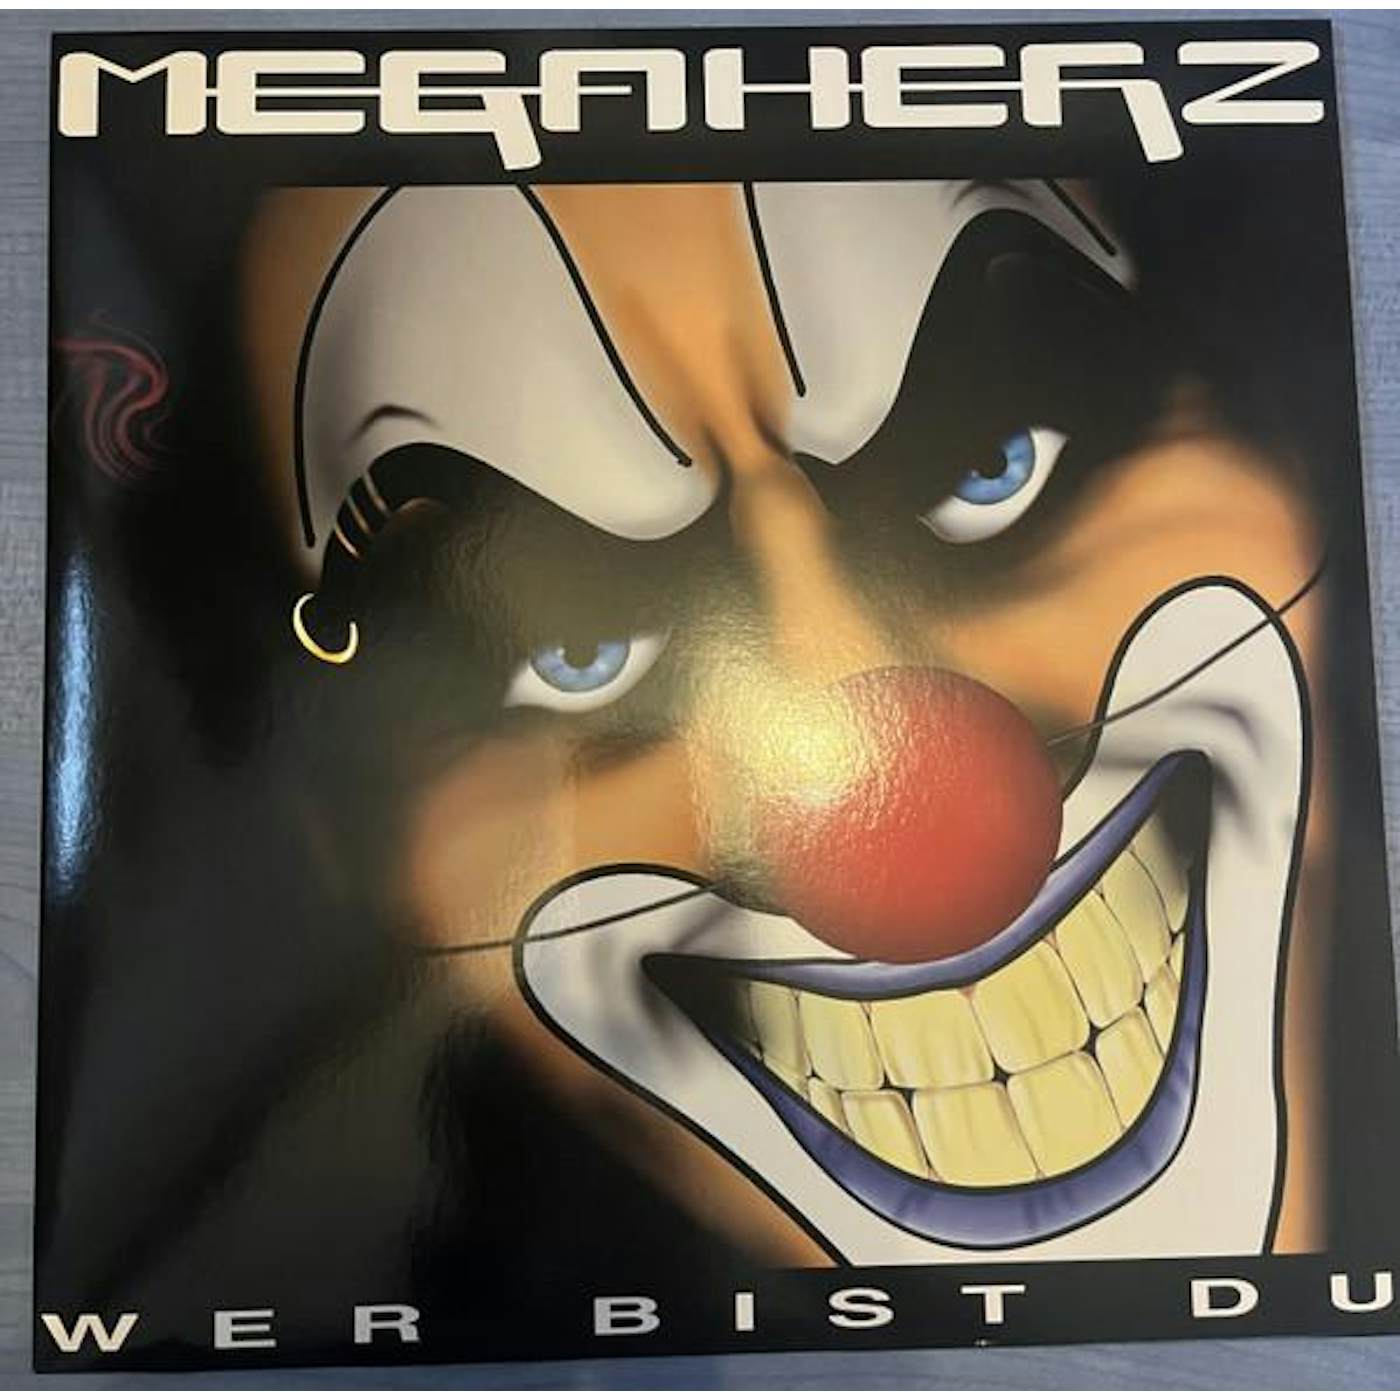 Megaherz Wer Bist Du Vinyl Record